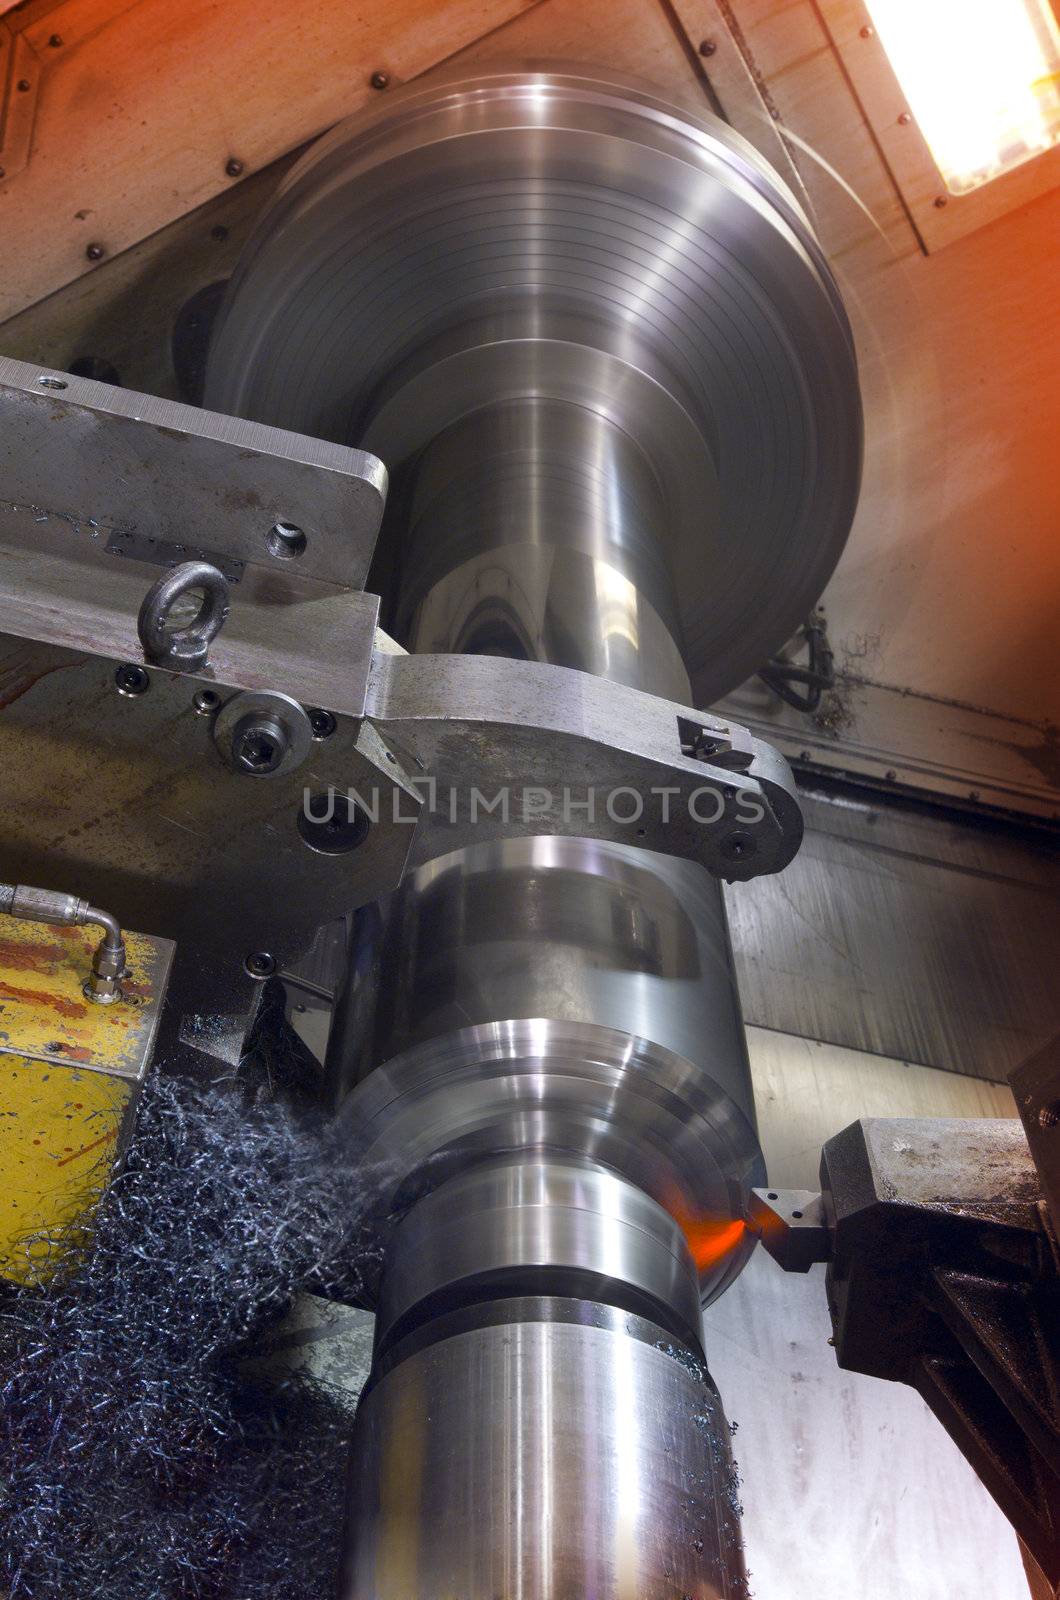 Big industrial lathe cutting through a steel tube